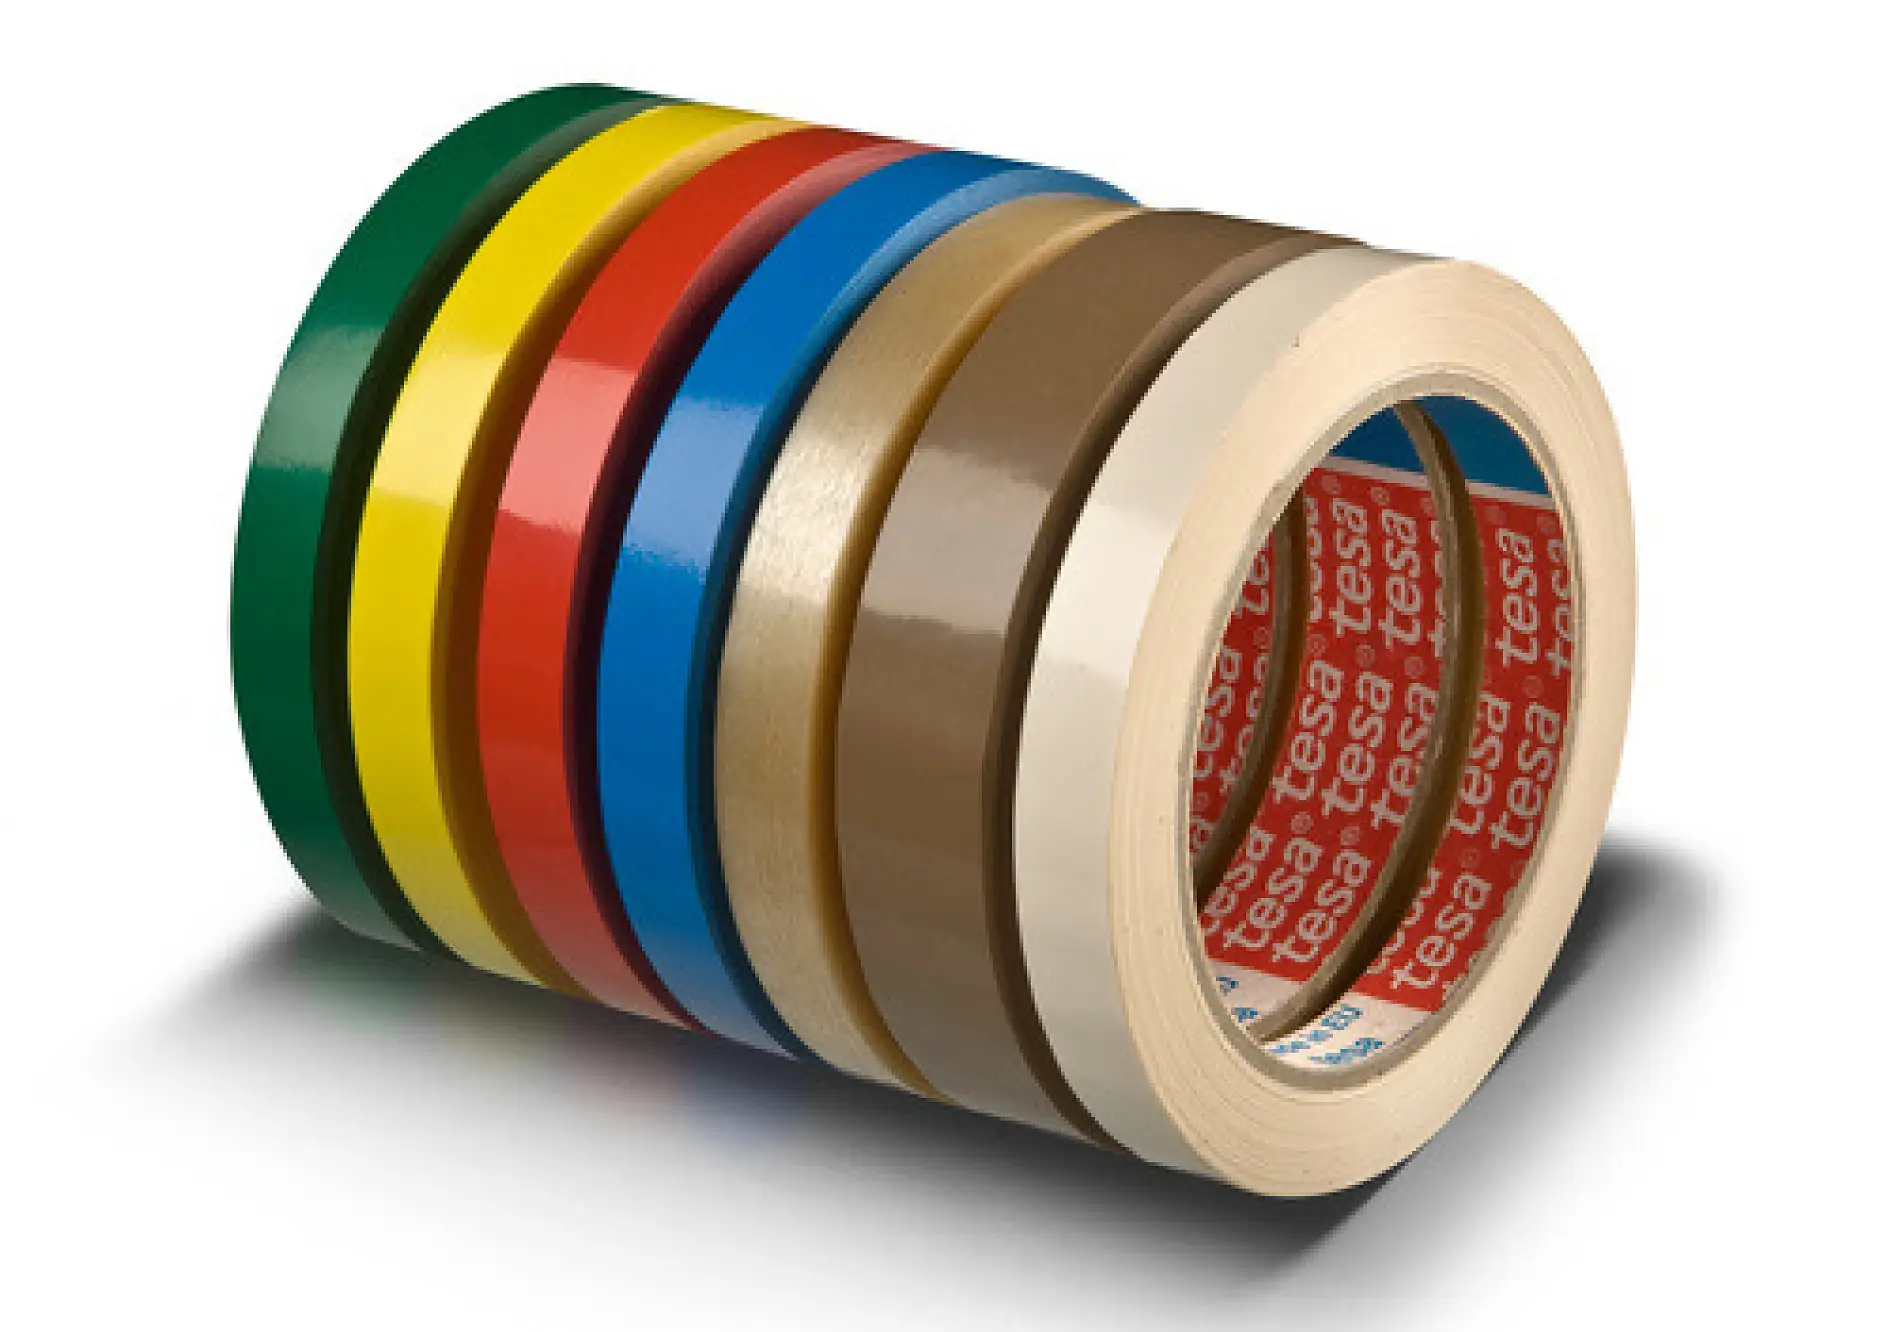 Ons tesa 4204 assortiment biedt tape in een bijpassende kleur voor elk type zak